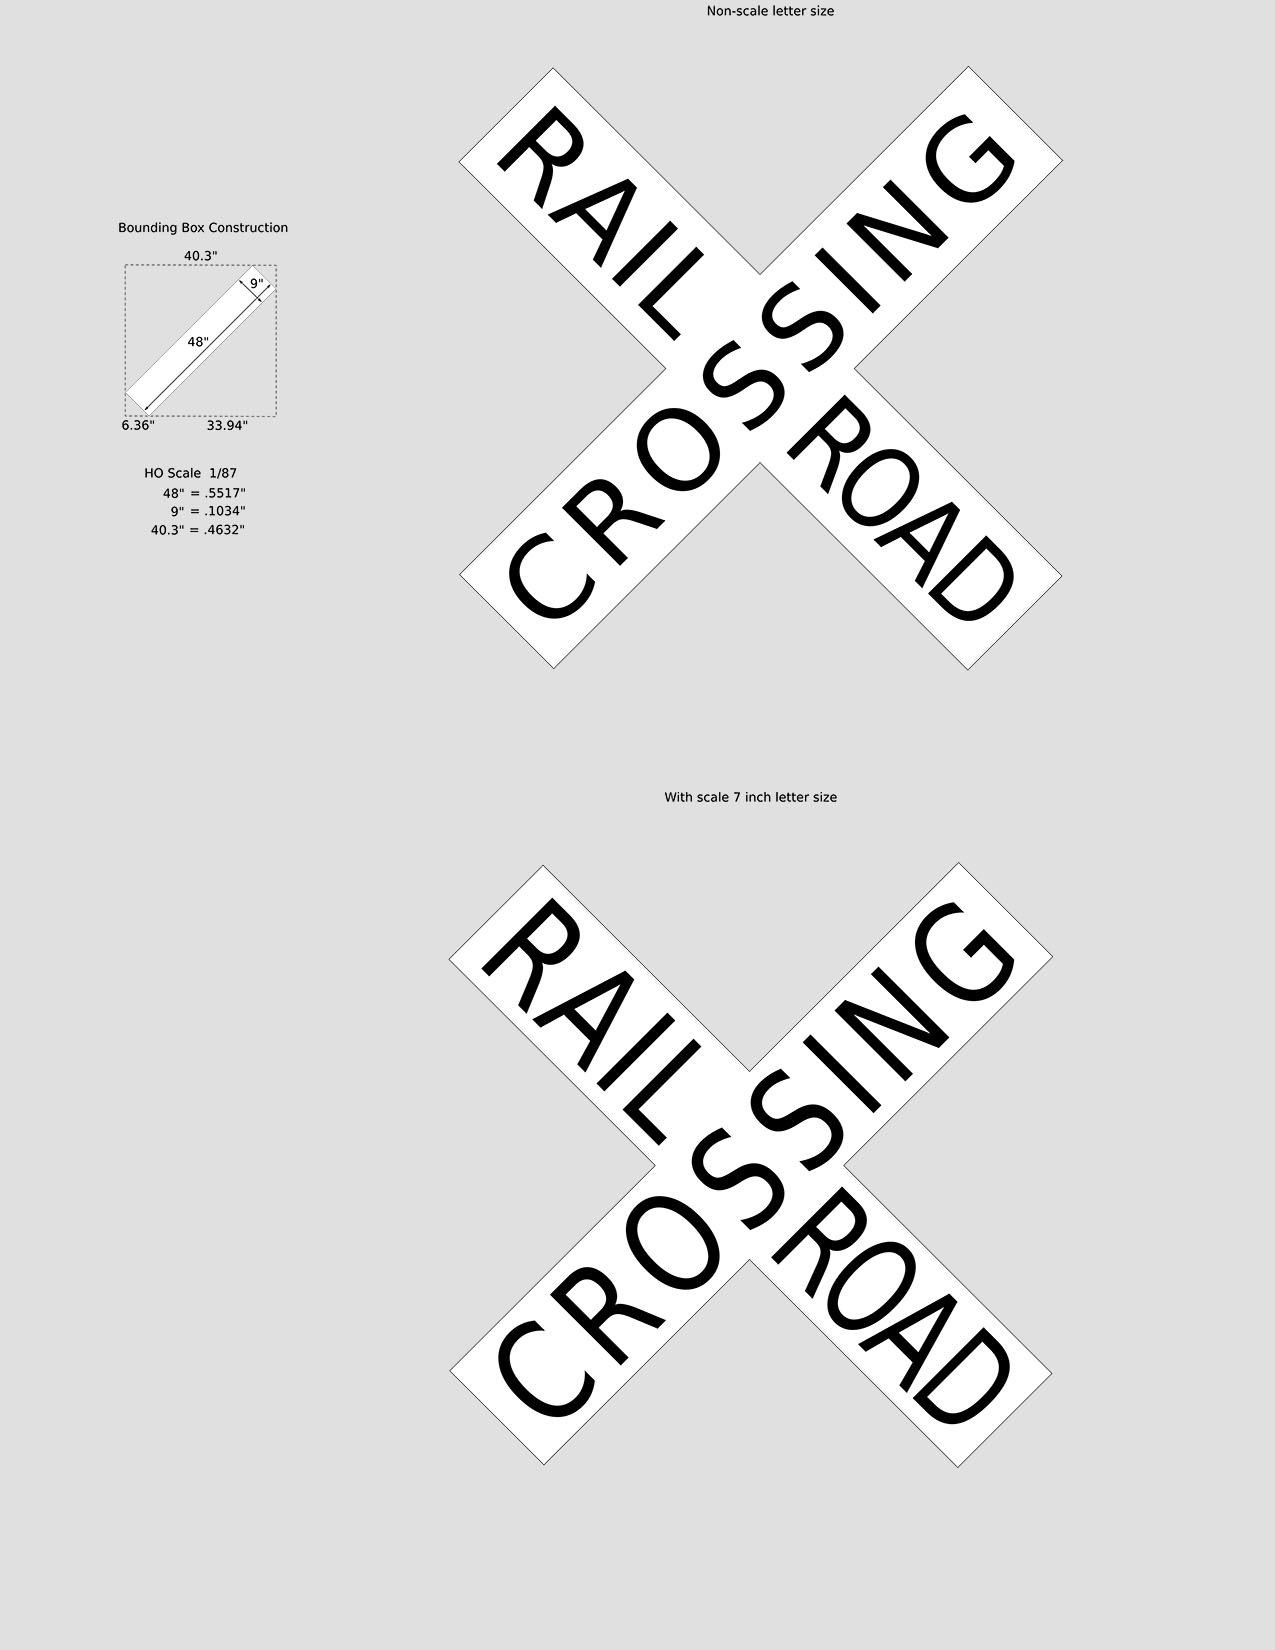 Rpi-Crossbuck-1.jpg